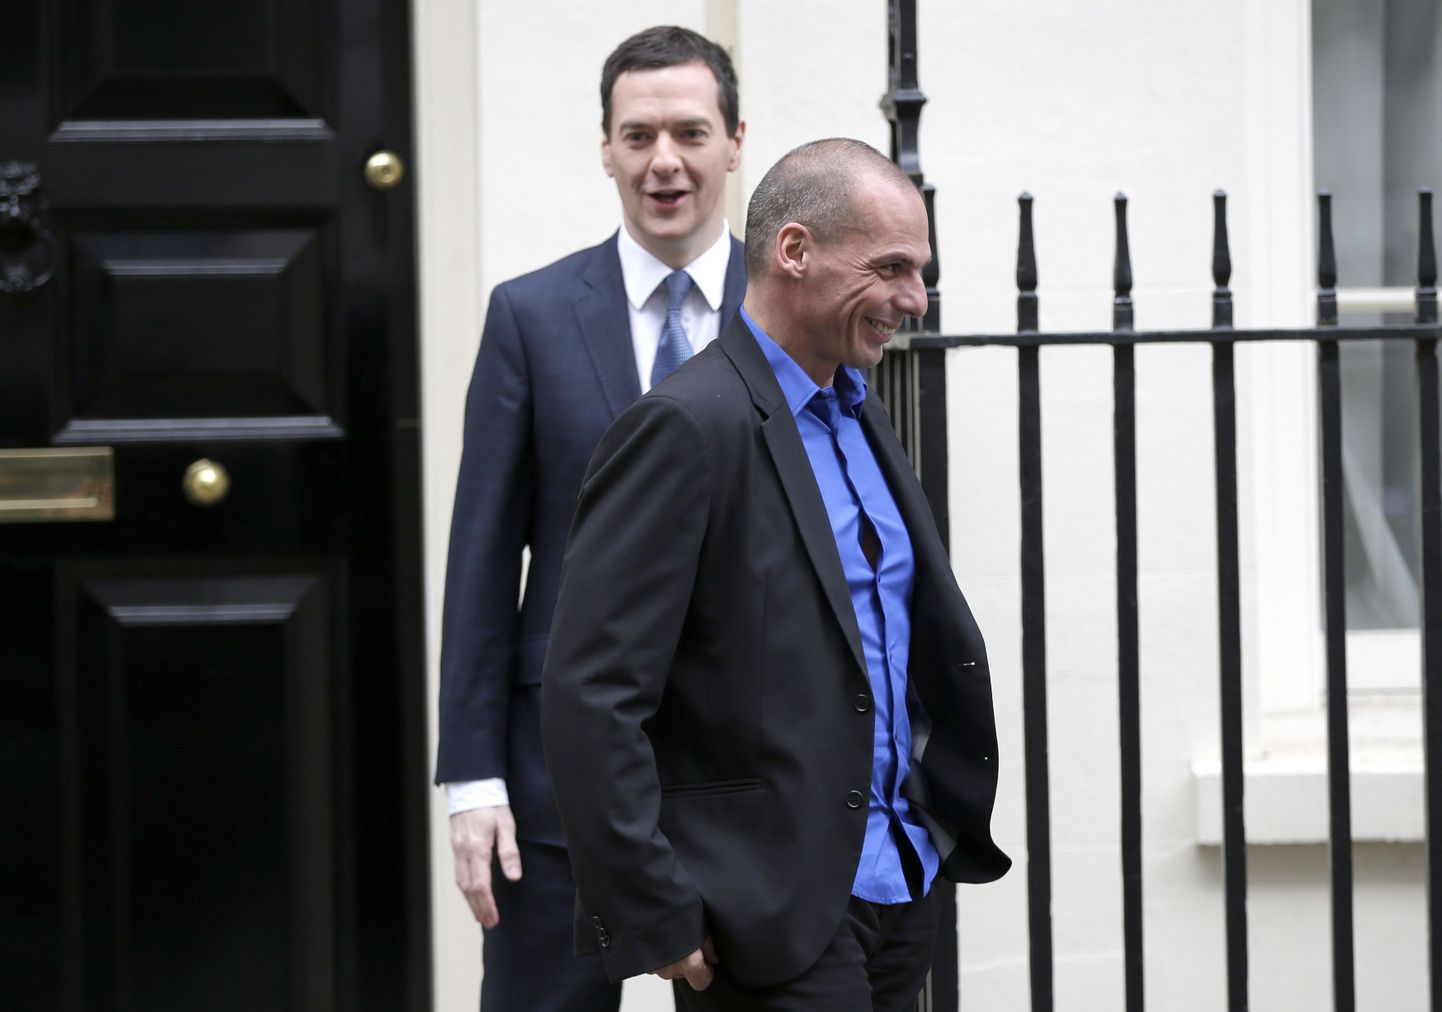 Kreeka rahandusminister Yanis Varoufakis (paremal) ja tema Briti kolleeg George Osborne Londonis.